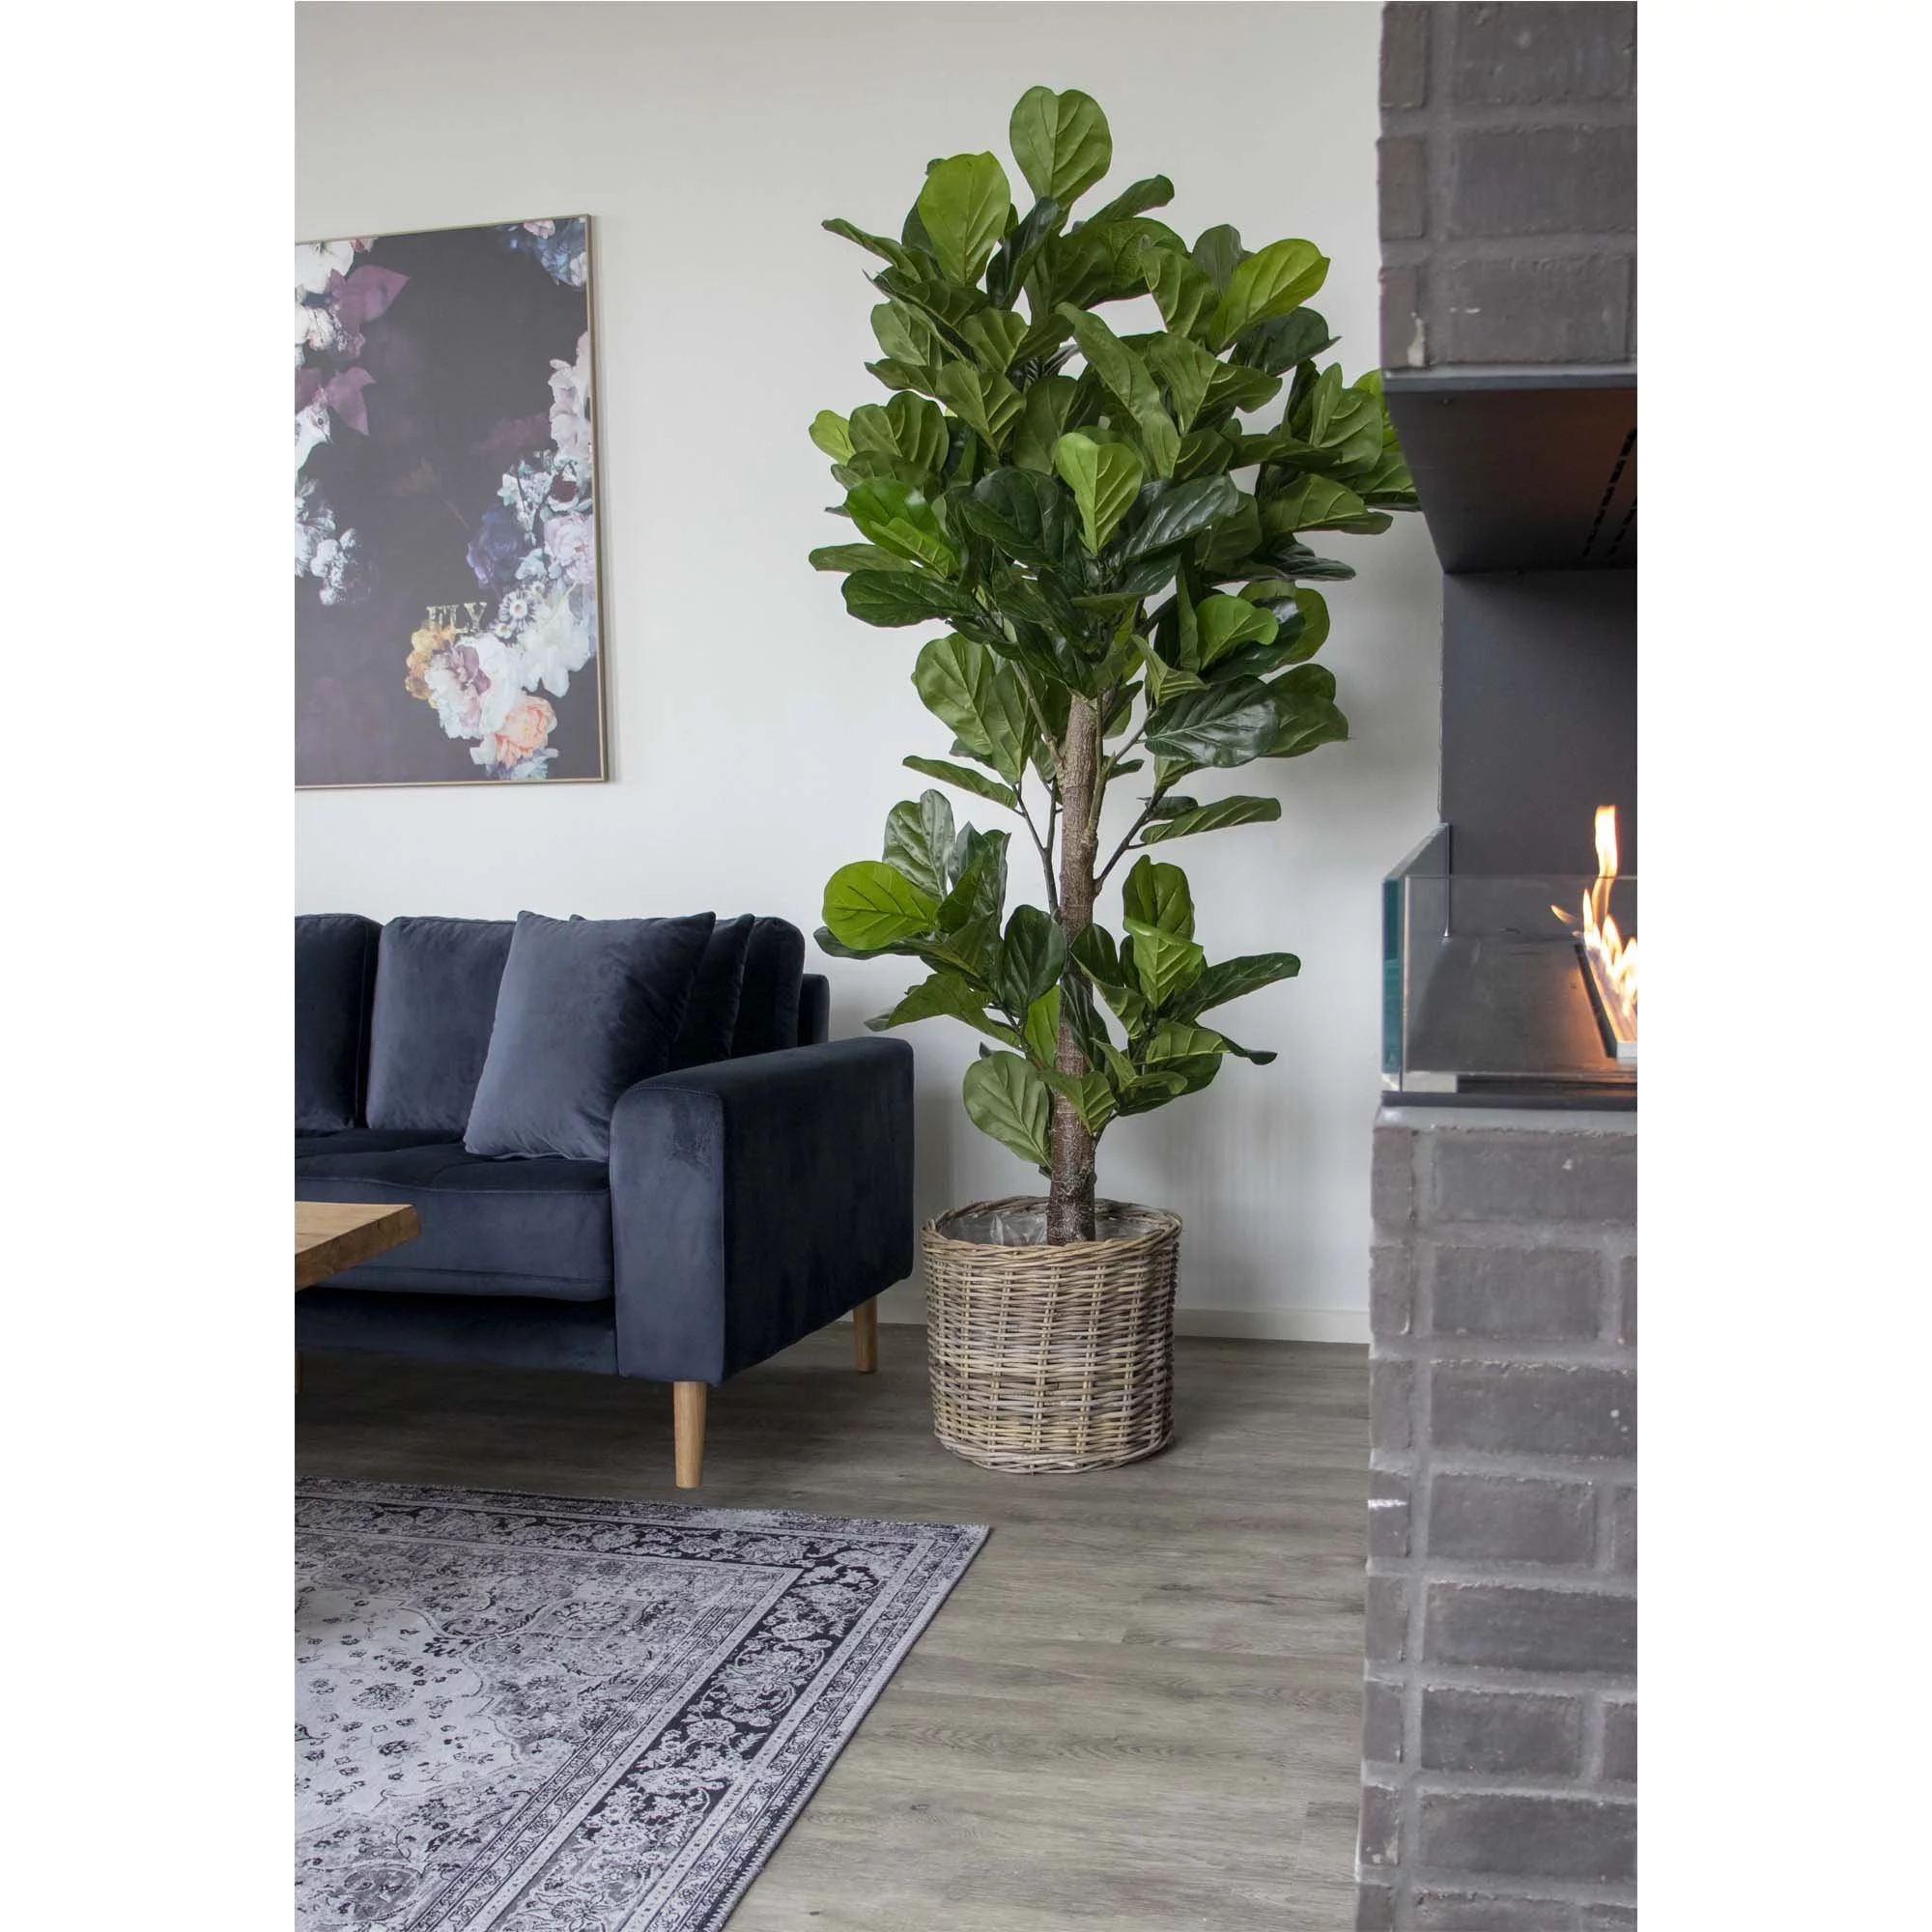 vioolbladplant in woonkamer